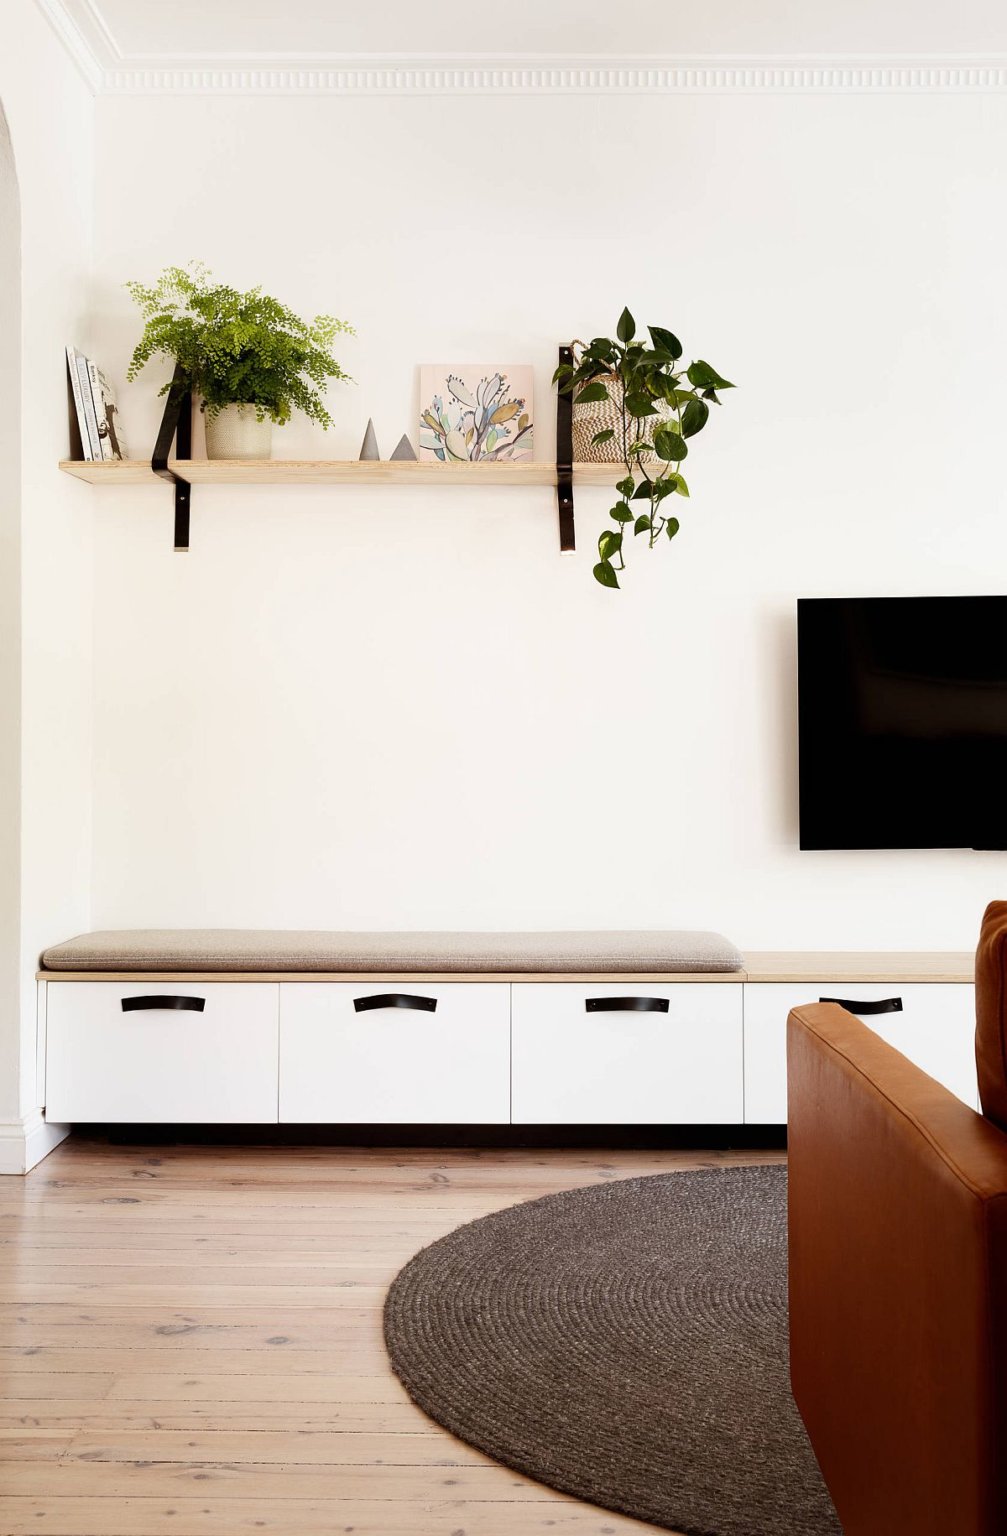 Hình ảnh một góc phòng khách nhỏ với tường màu trắng làm nền cho kệ gỗ, cây xanh, sofa nâu da bò nổi bật hơn